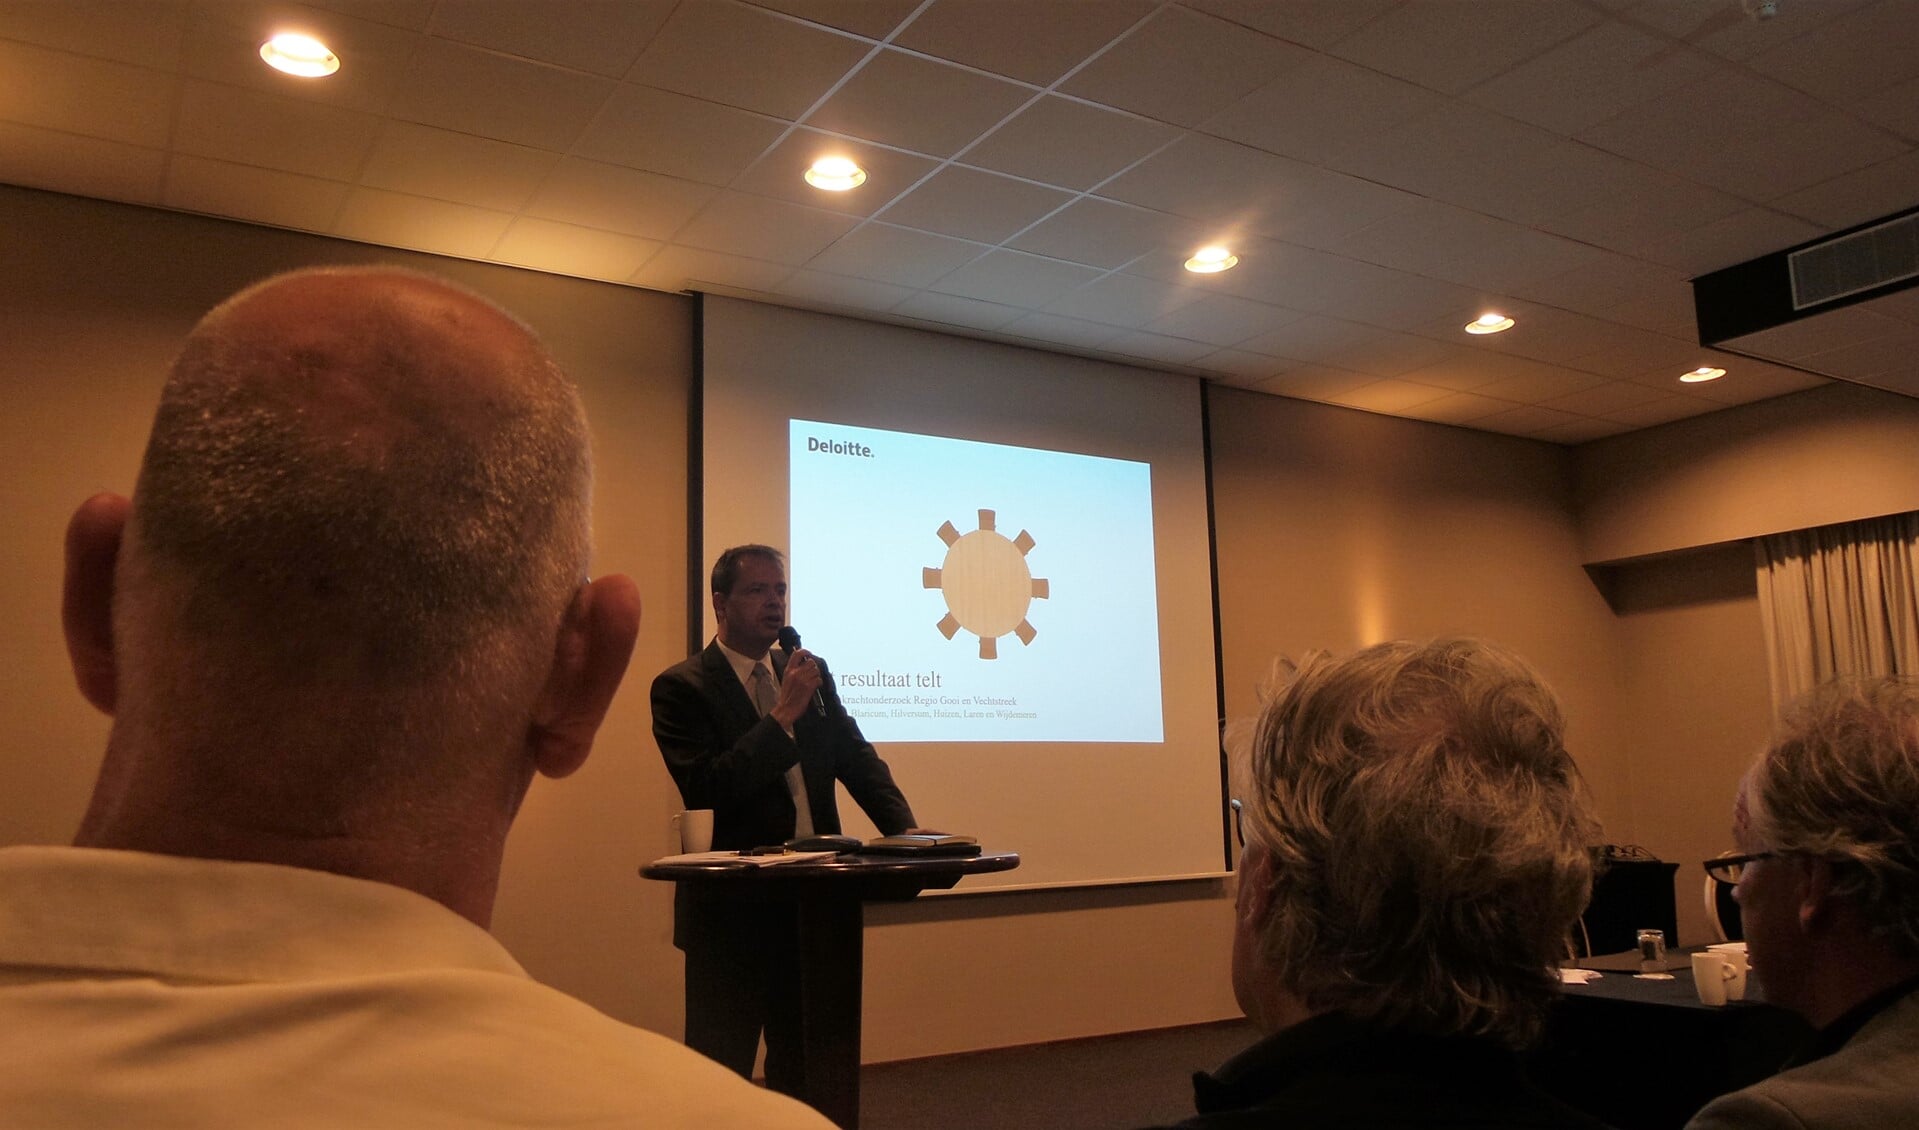 Gedeputeerde Jack van der Hoek bij de presentatie van het bestuurskrachtrapport in september 2016.